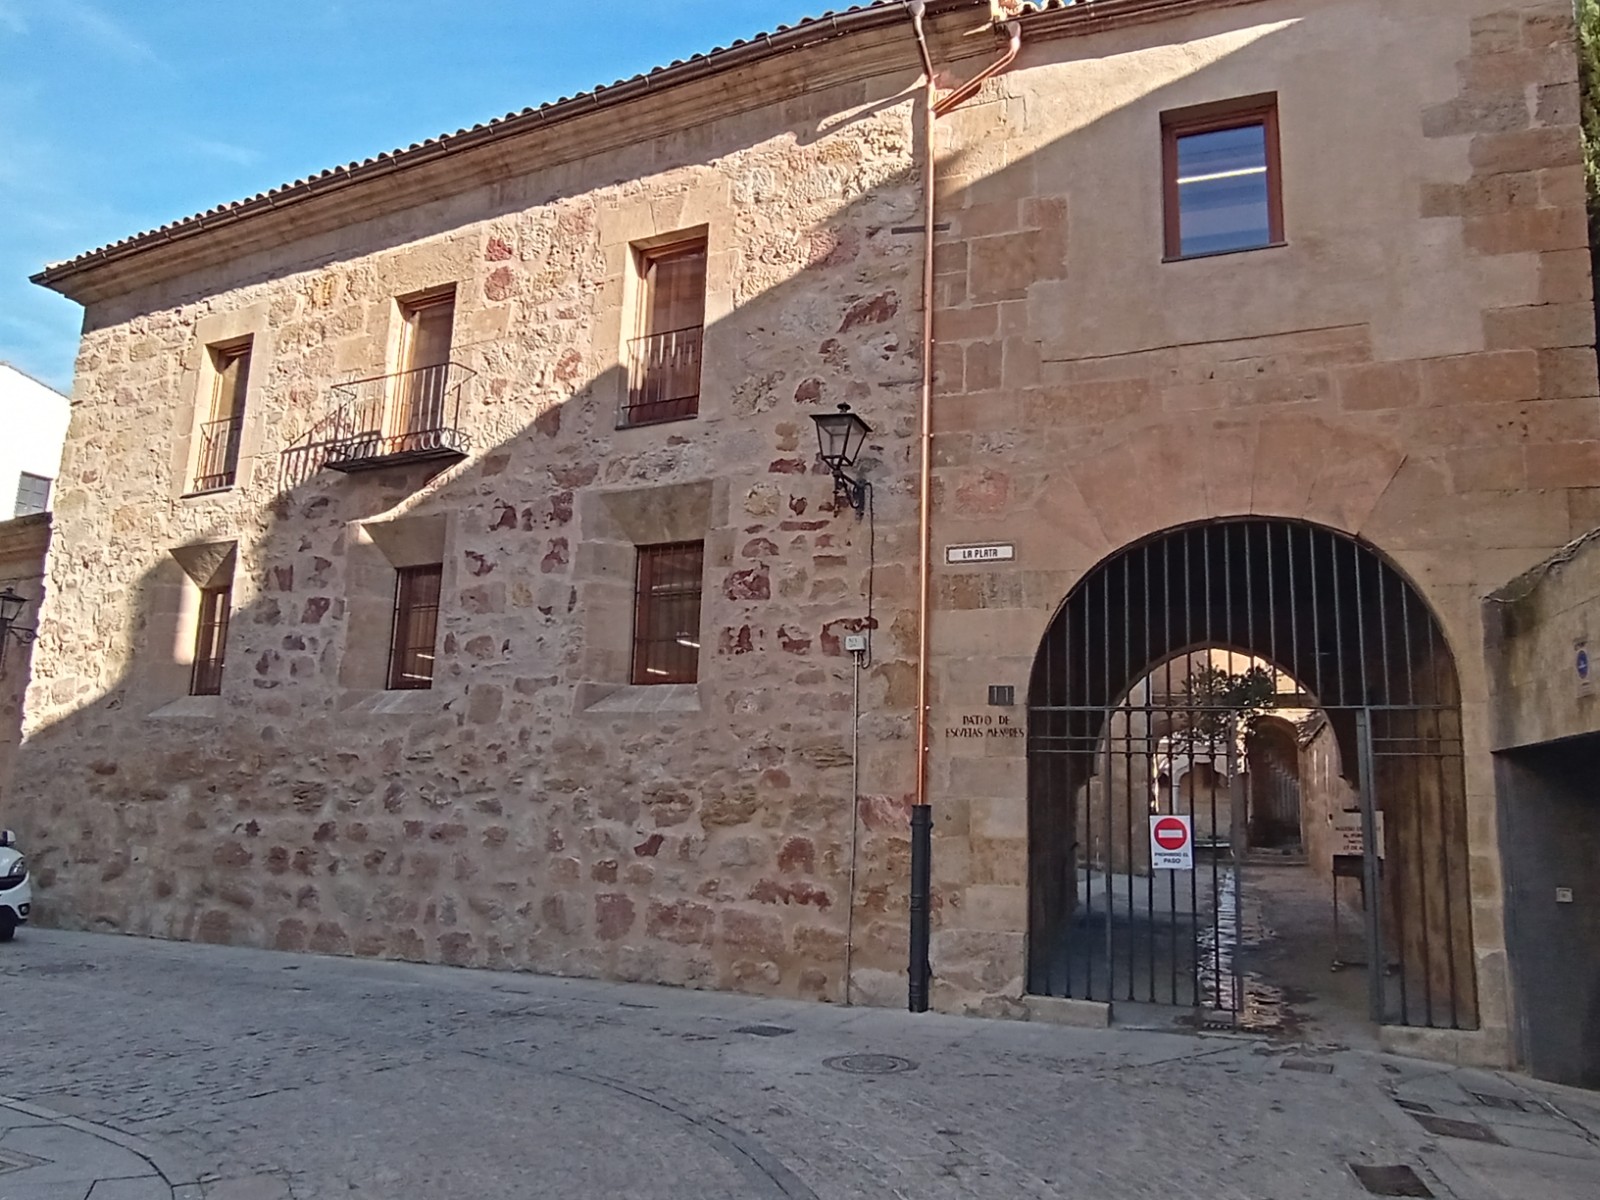 Escuelas Menores Salamanca